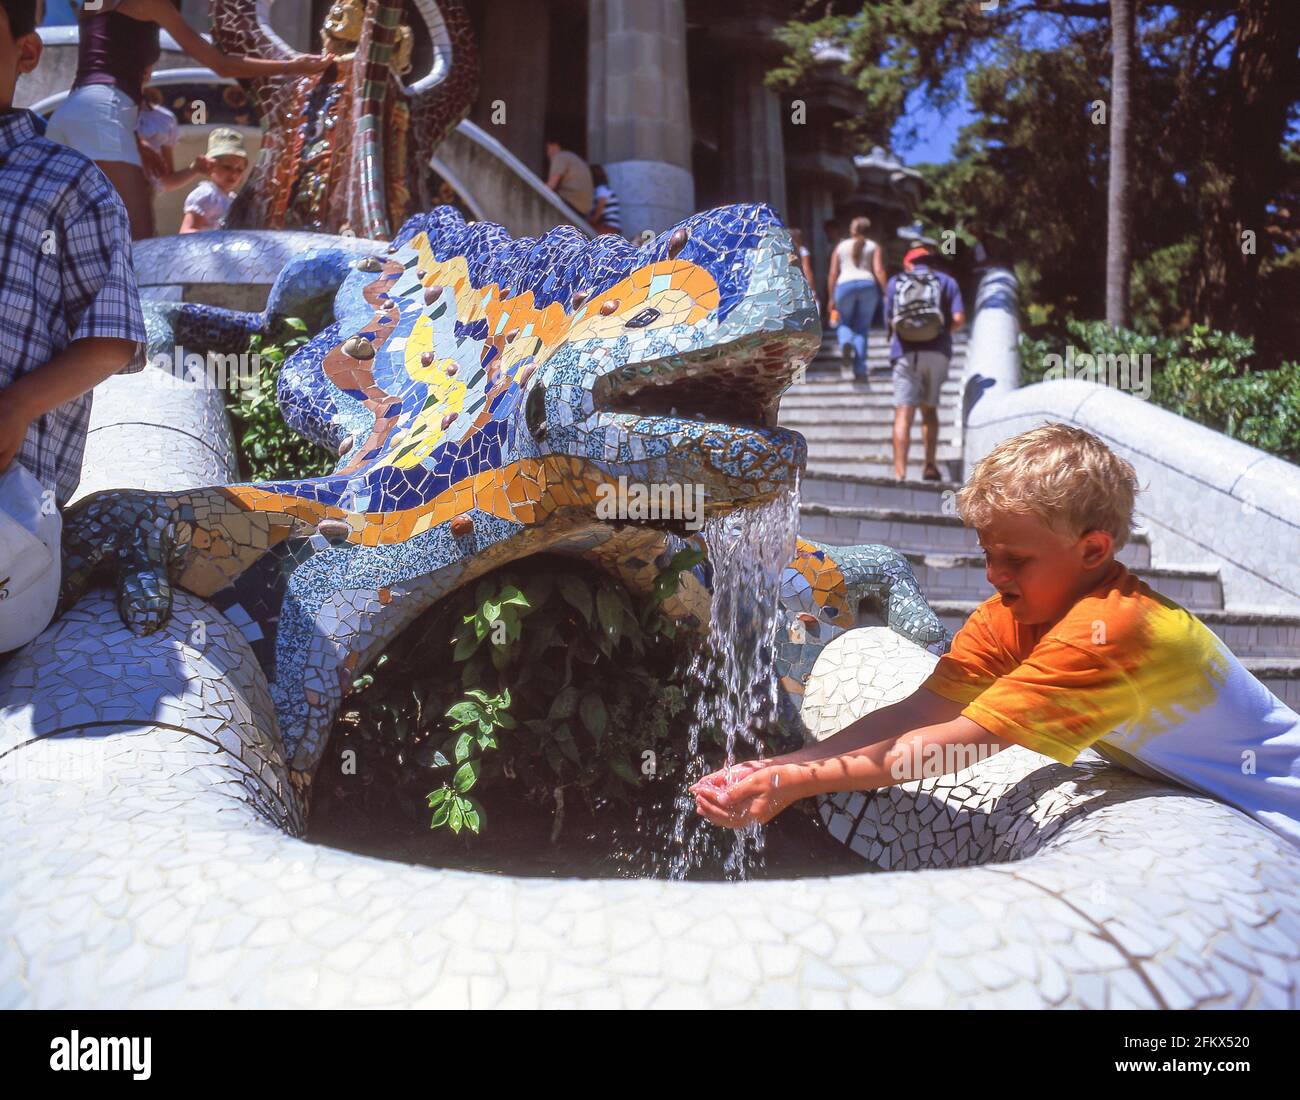 La fontaine de dragon en mosaïque de Gaudi, Parc (Parc) Guell, quartier de Gràcia, Barcelone, province de Barcelone, Catalogne, Espagne Banque D'Images